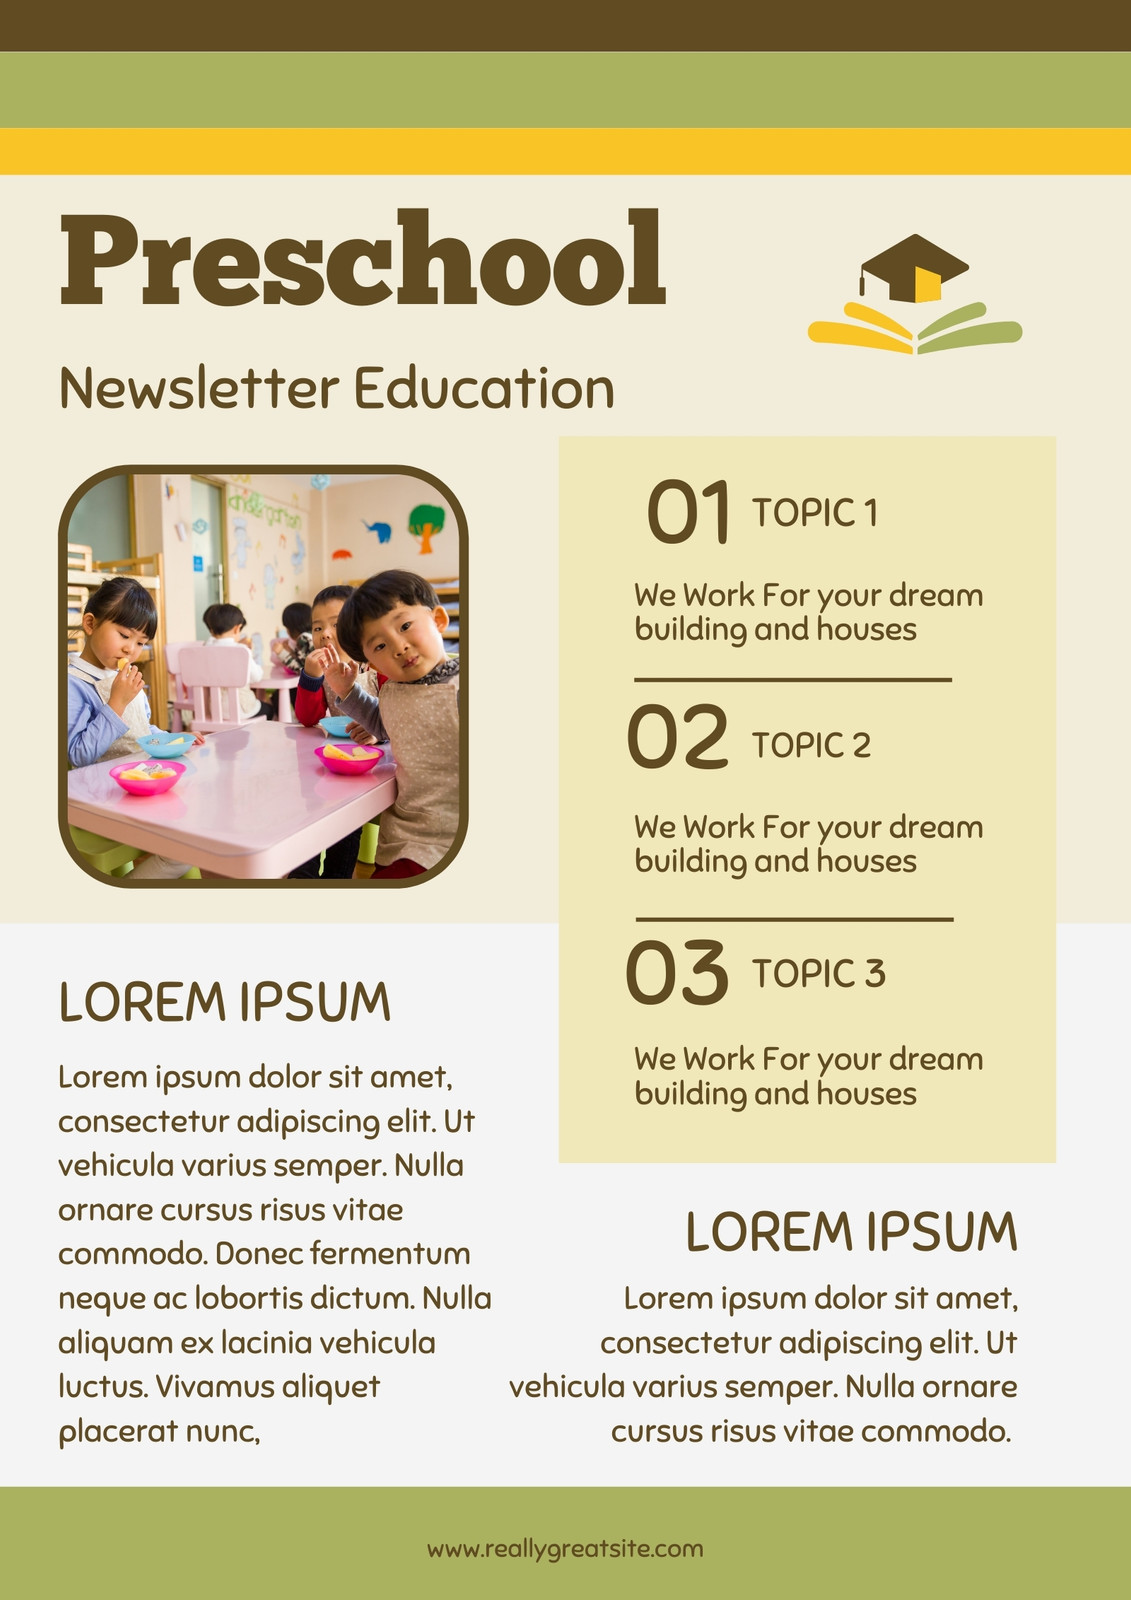 parent newsletter preschool for topics